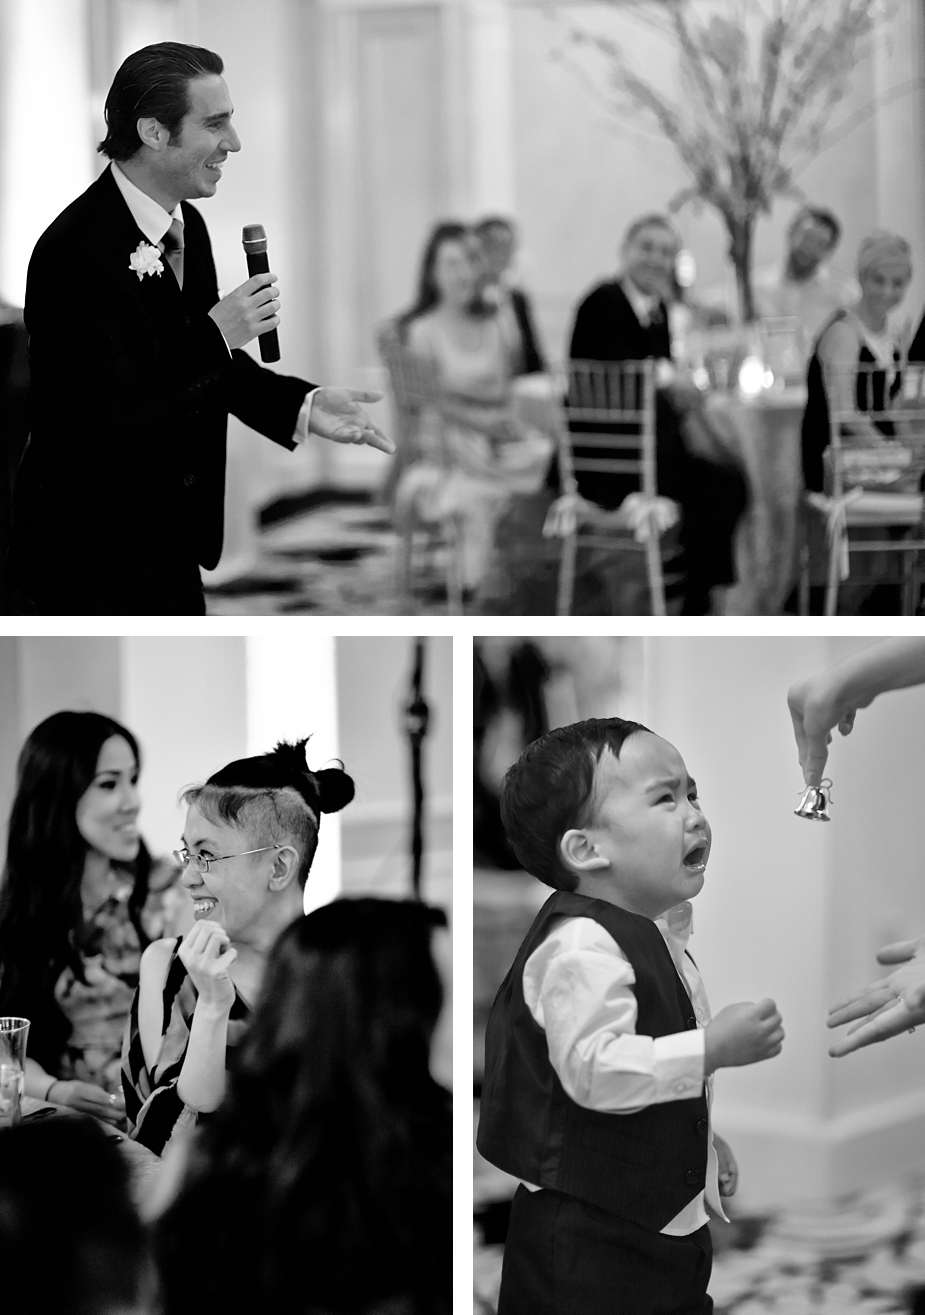 wpid-lennox_hotel_boston_danielle_fernando_wedding_photos_44-2014-05-20-11-17.jpg